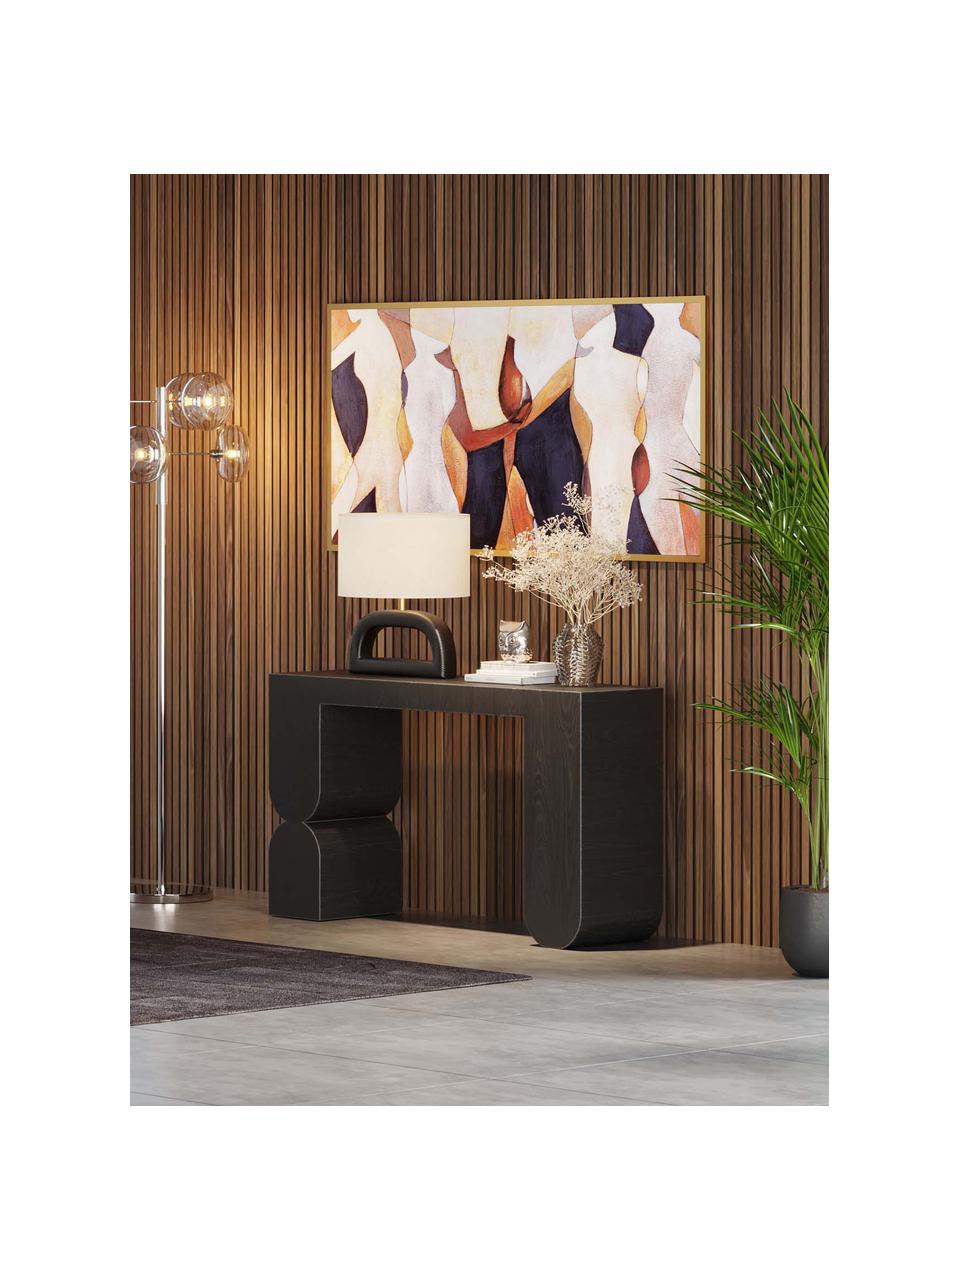 Ručne vyrobený drevený konzolový stolík Curve, MDF-doska strednej hustoty s jaseňovou dyhou, Drevo, čierna lakovaná, Š 120 x V 76 cm